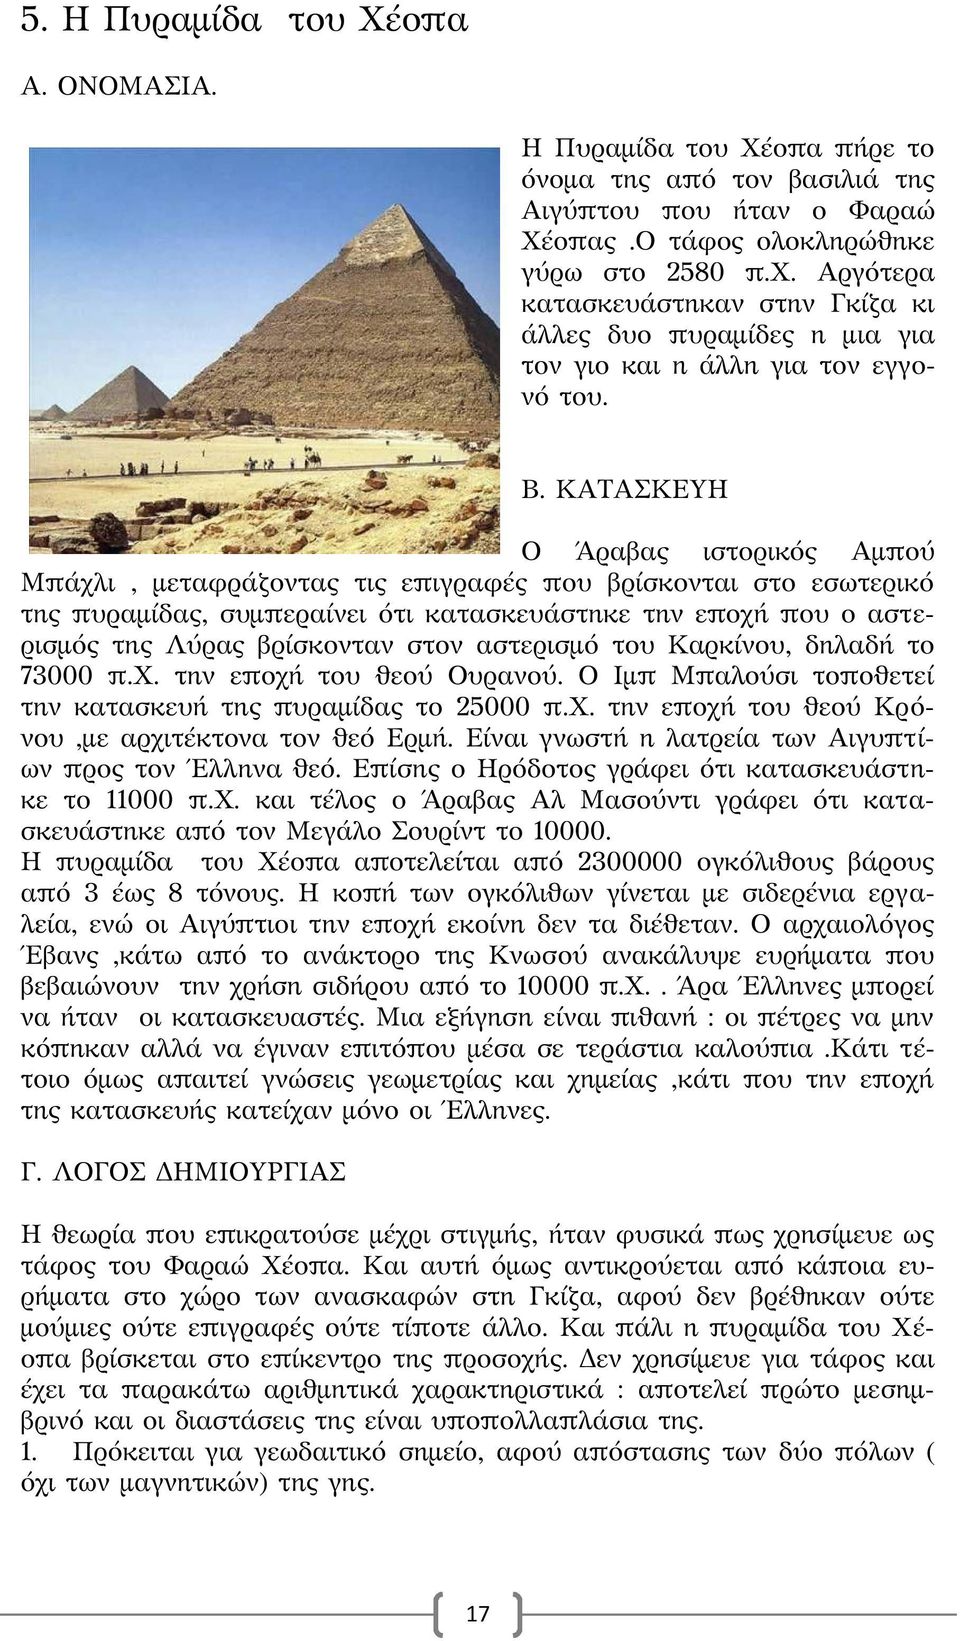 ΚΑΤΑΣΚΕΥΗ Ο Άραβας ιστορικός Αμπού Μπάχλι, μεταφράζοντας τις επιγραφές που βρίσκονται στο εσωτερικό της πυραμίδας, συμπεραίνει ότι κατασκευάστηκε την εποχή που ο αστερισμός της Λύρας βρίσκονταν στον